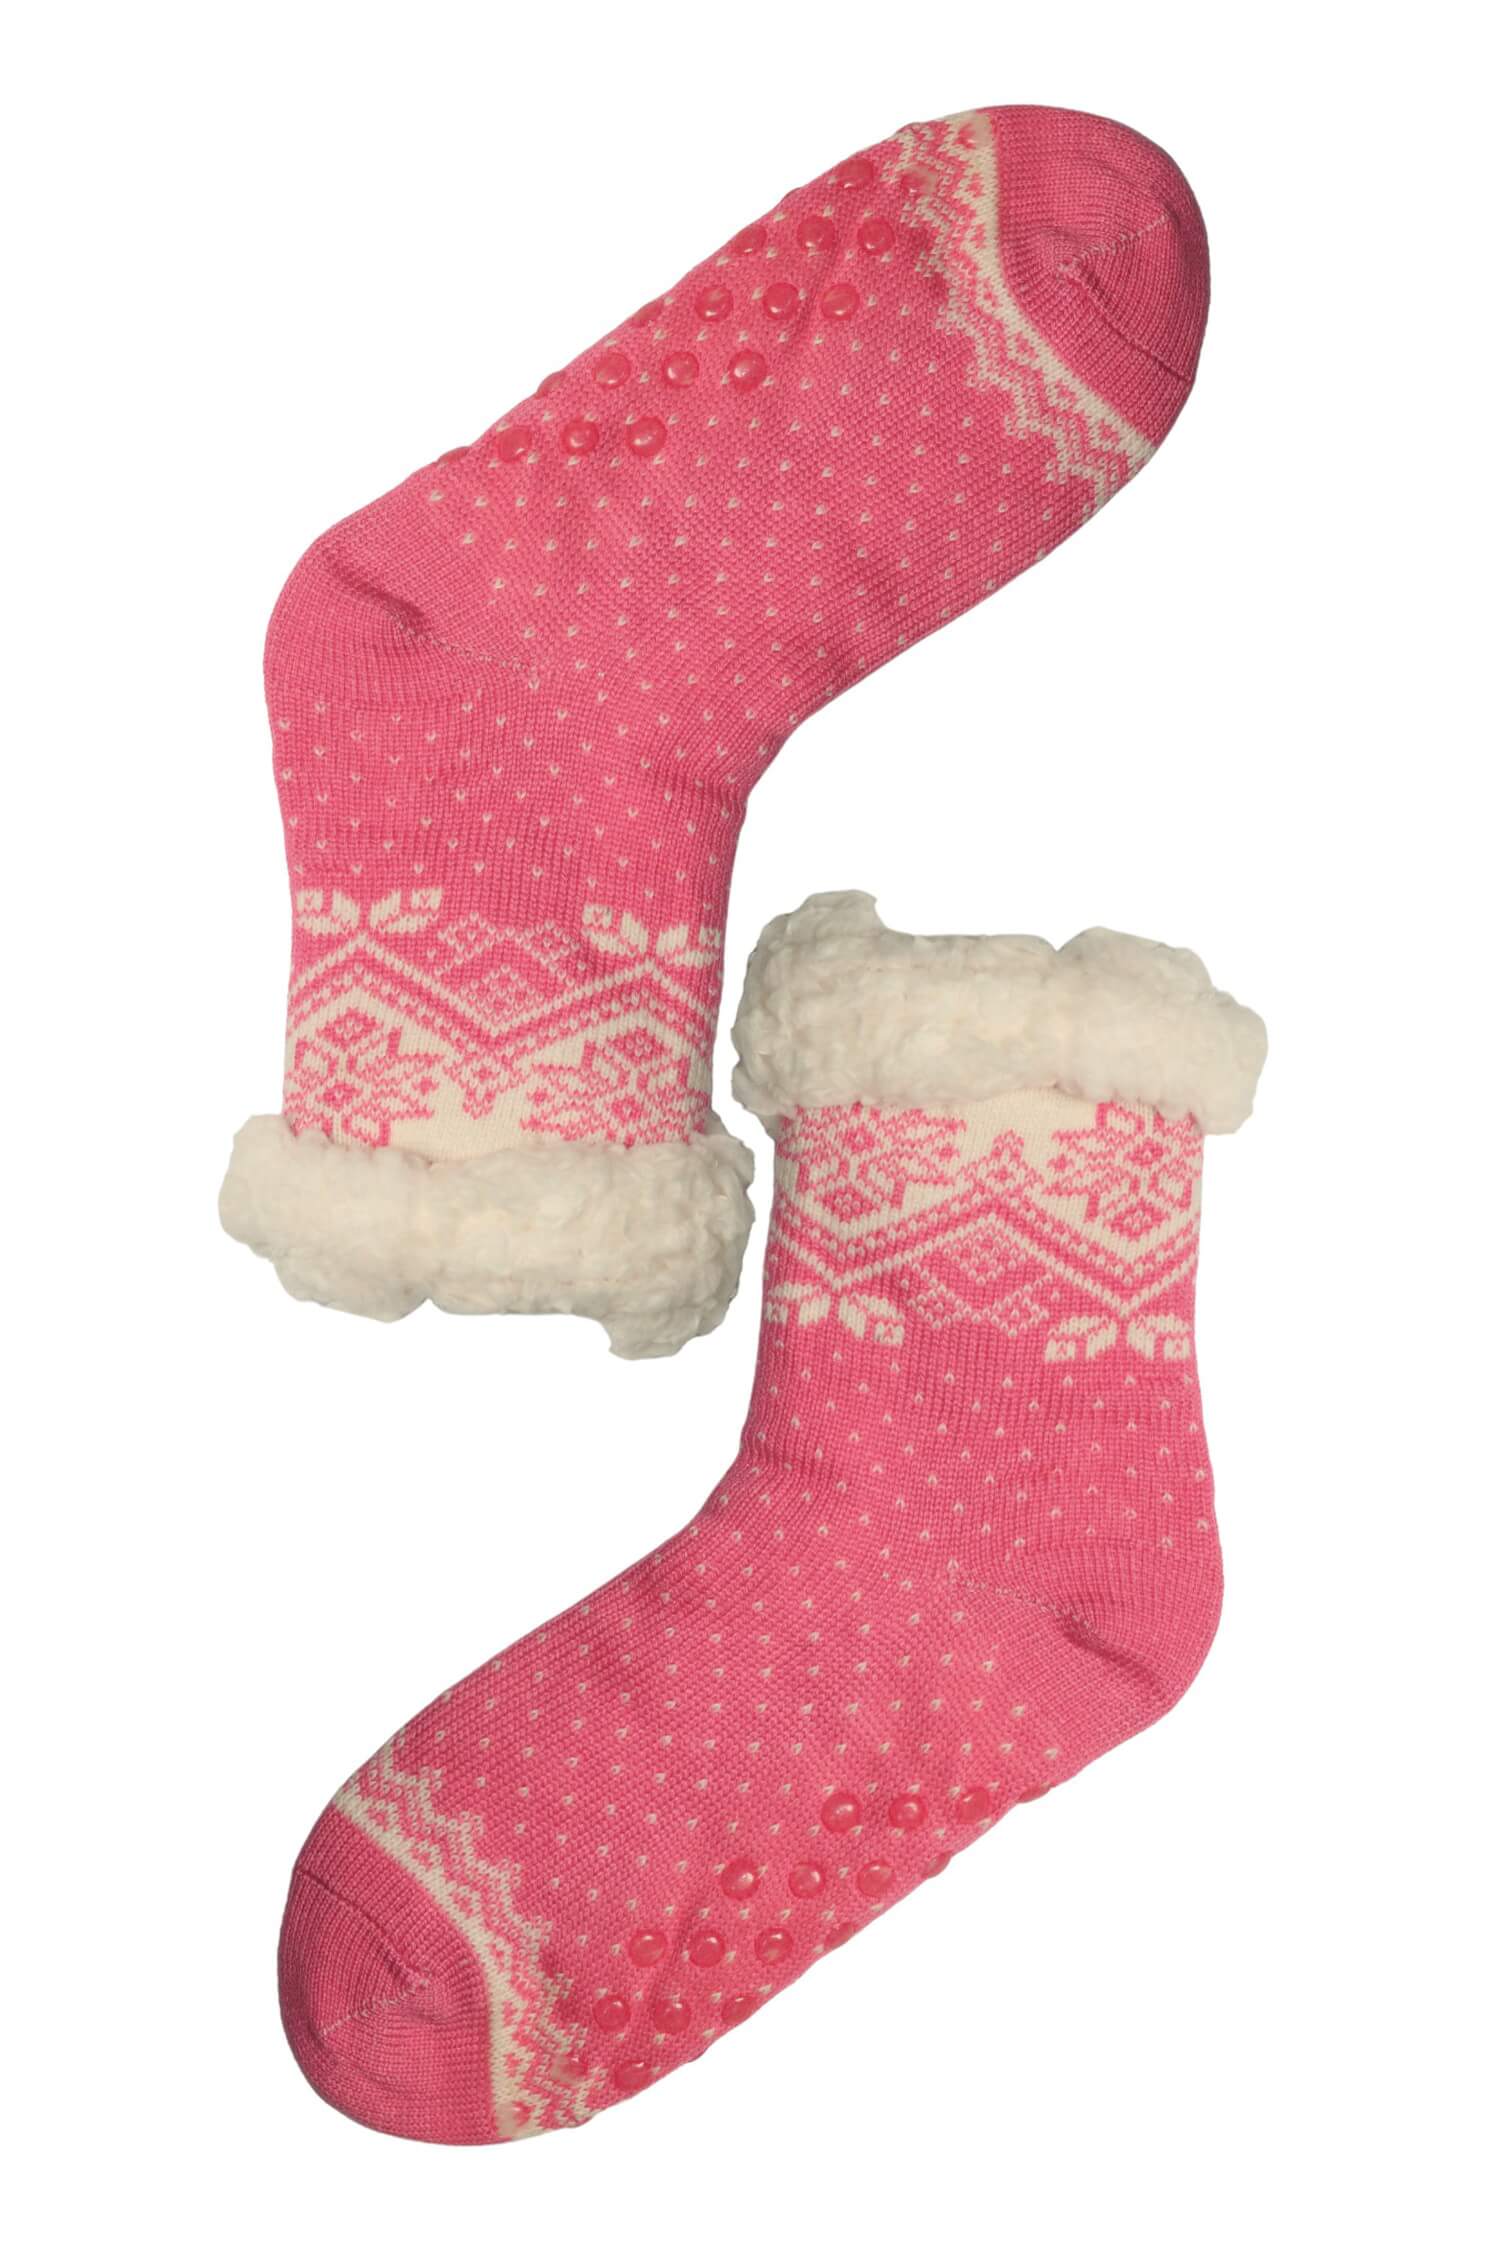 Lamb růžové hřejivé ponožky s beránkem 2138 37-39 růžová